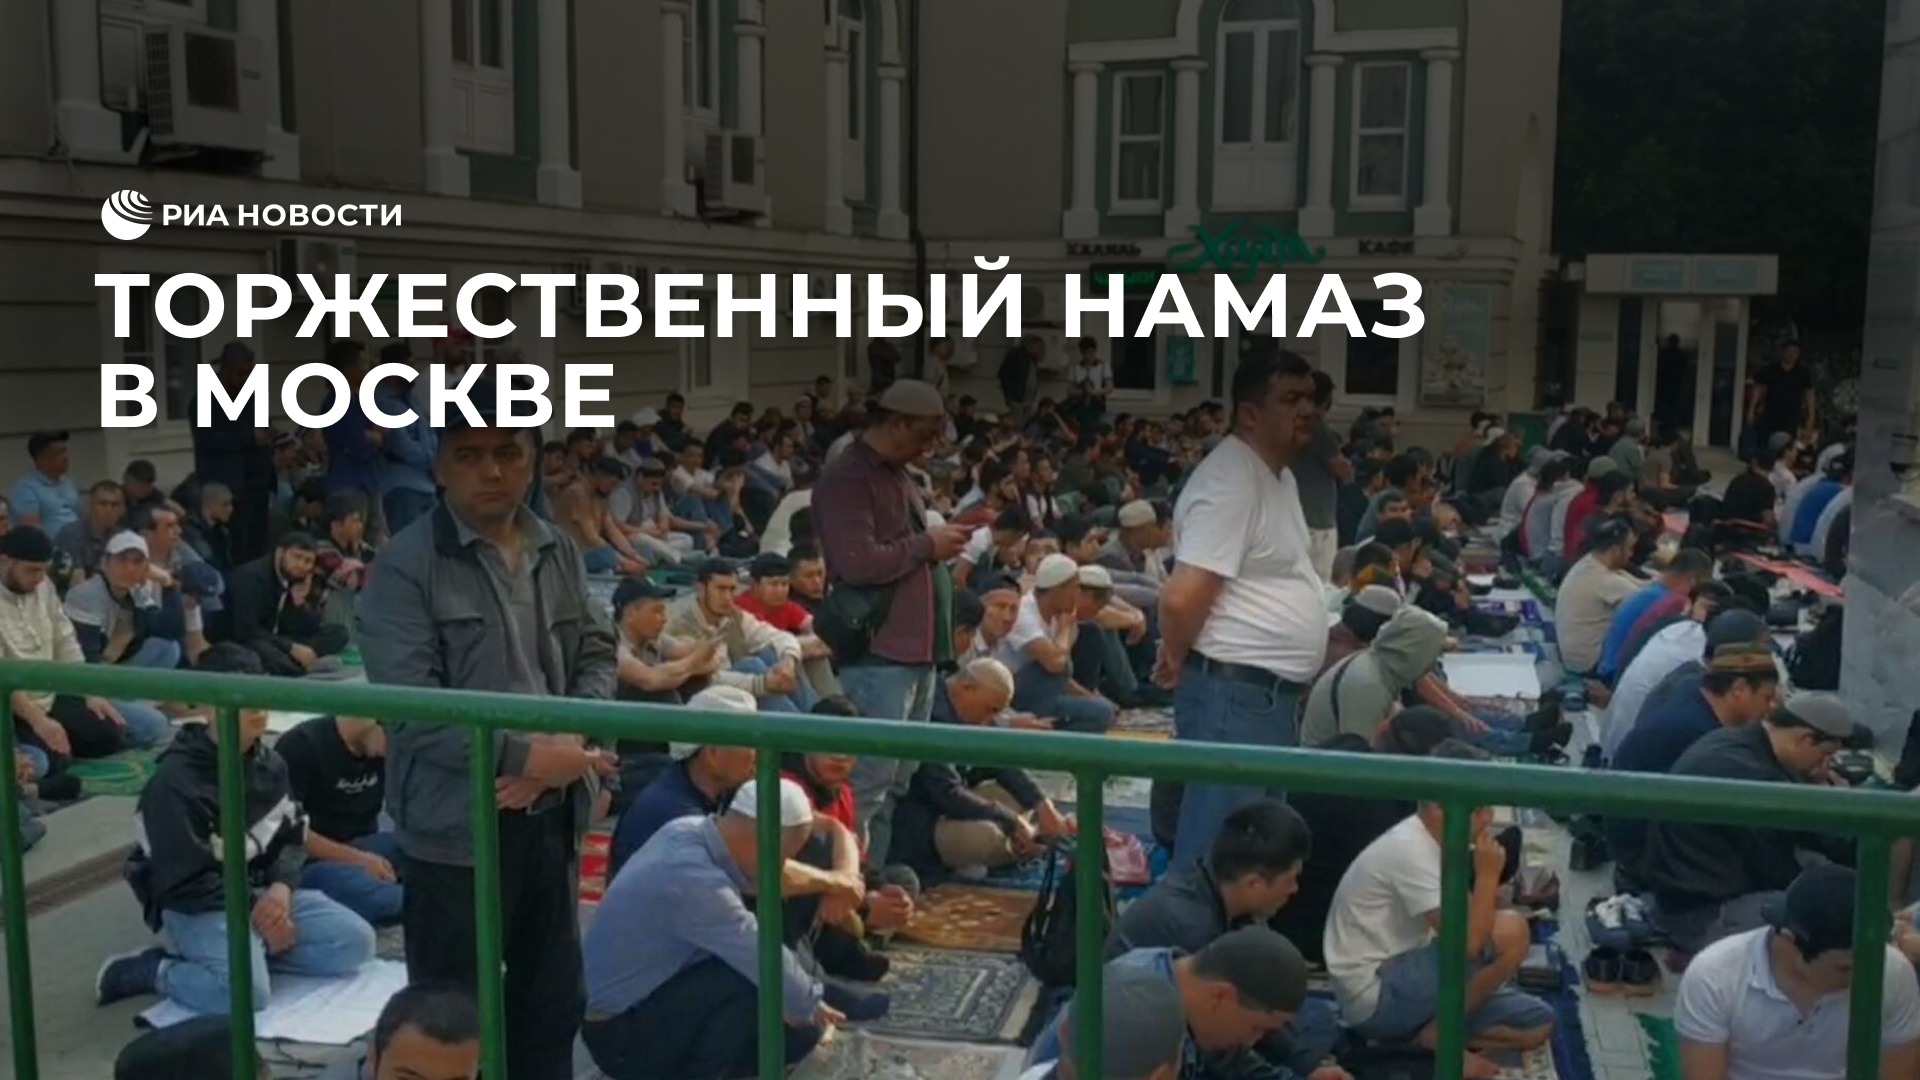 Торжественный намаз в Москве в связи с праздником Курбан-байрам